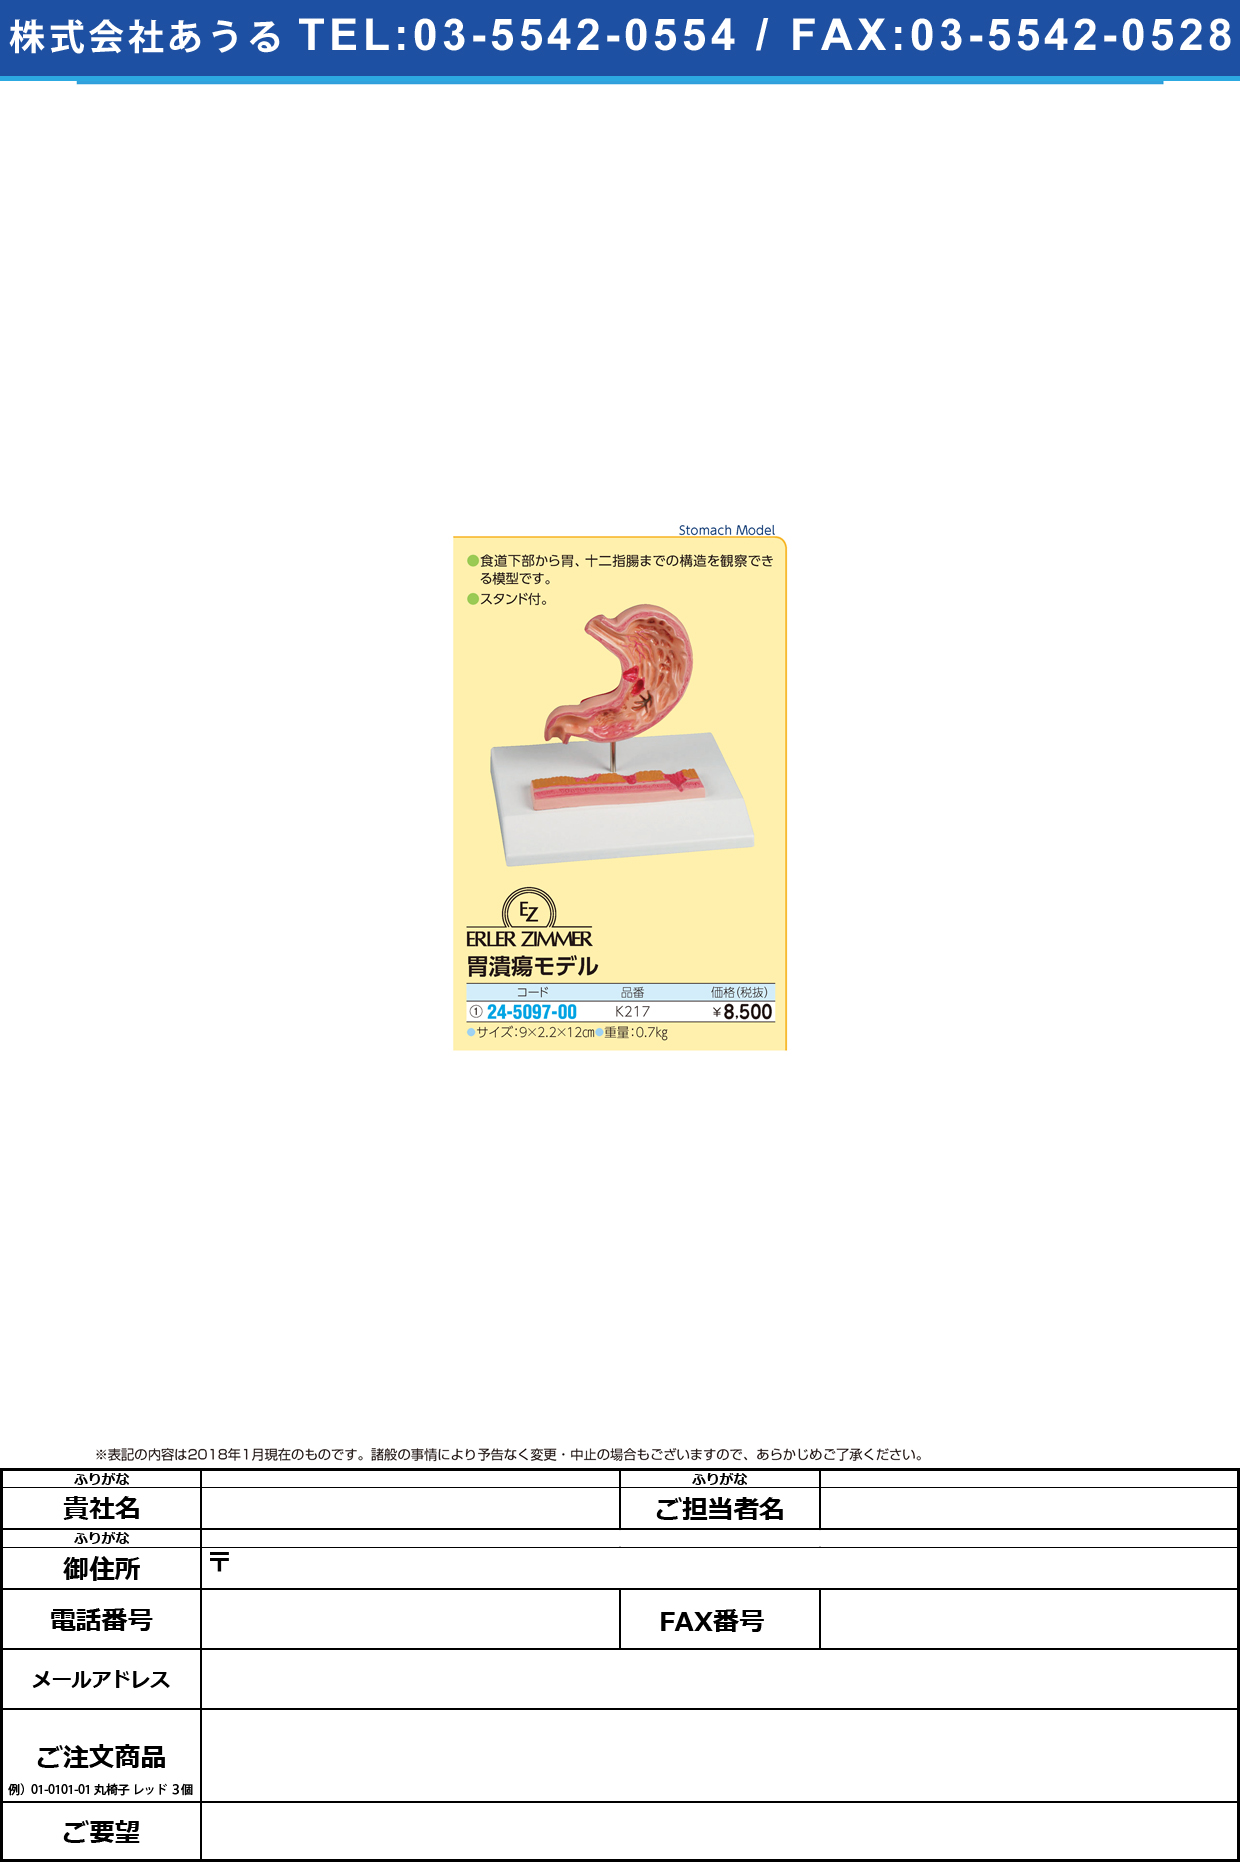 (24-5097-00)胃潰瘍モデル K217 ｲｶｲﾖｳﾓﾃﾞﾙ(エルラージーマー社)【1個単位】【2018年カタログ商品】